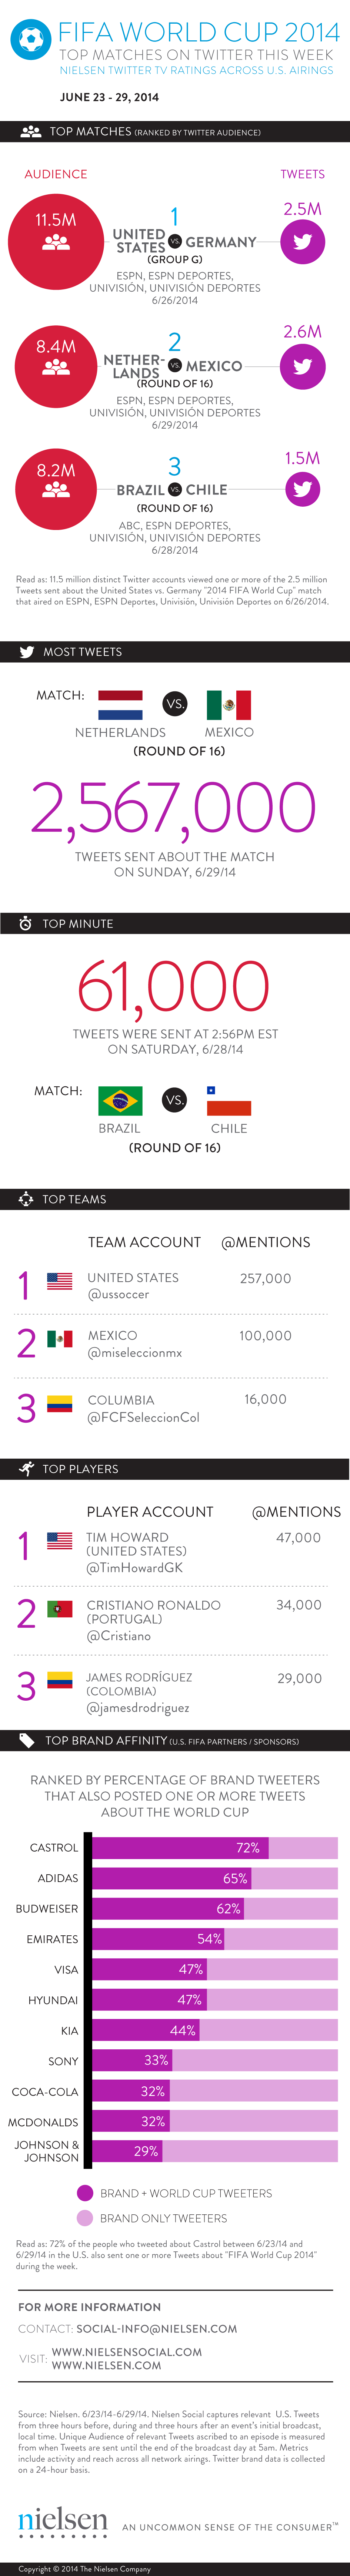 mistrzostwa świata 2014 społeczna karta wyników mobilna